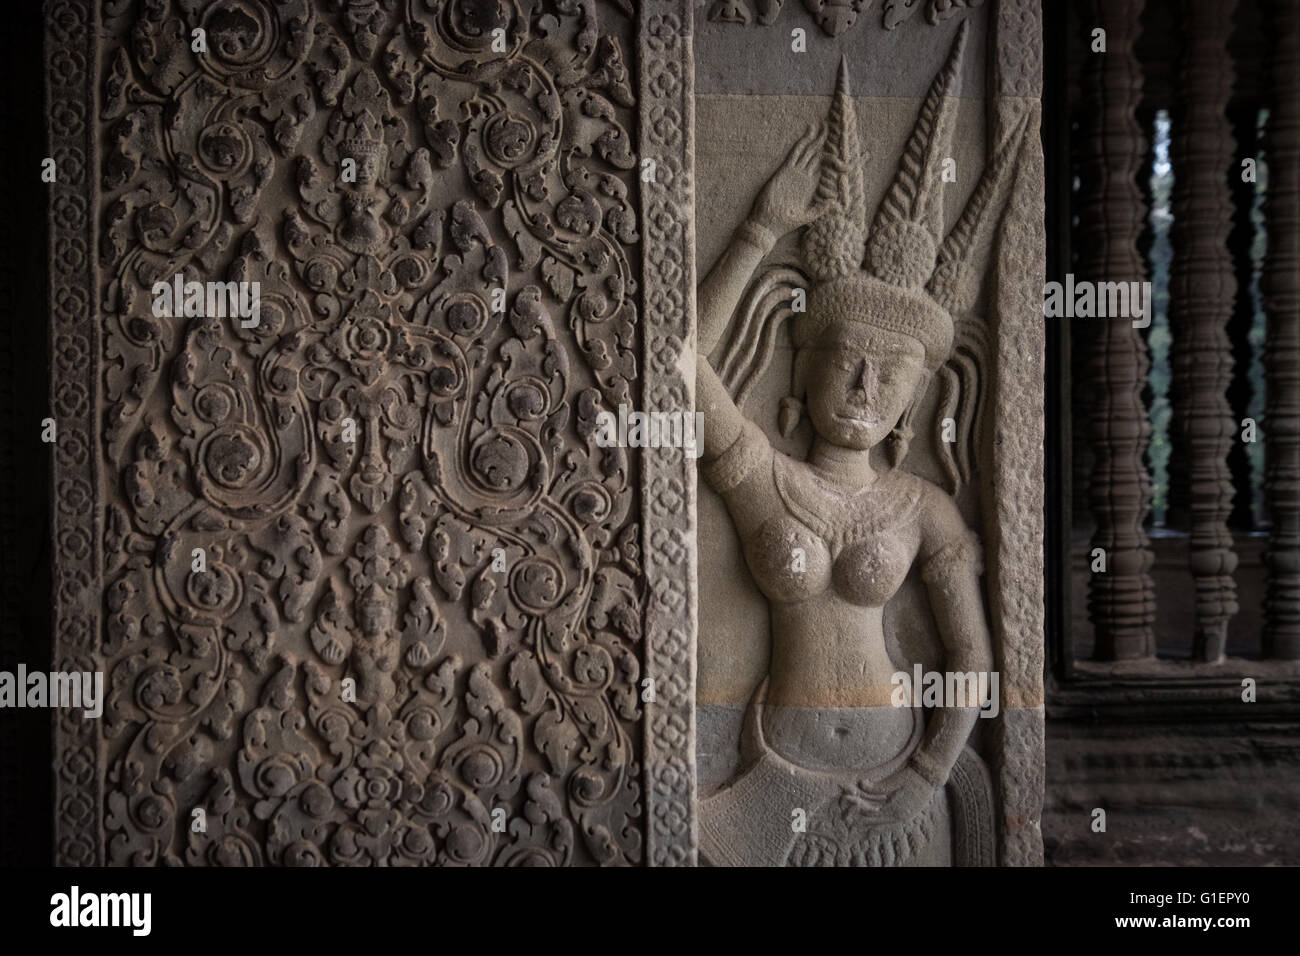 Les sculptures sur pierre à Angkor Wat, au Cambodge Banque D'Images